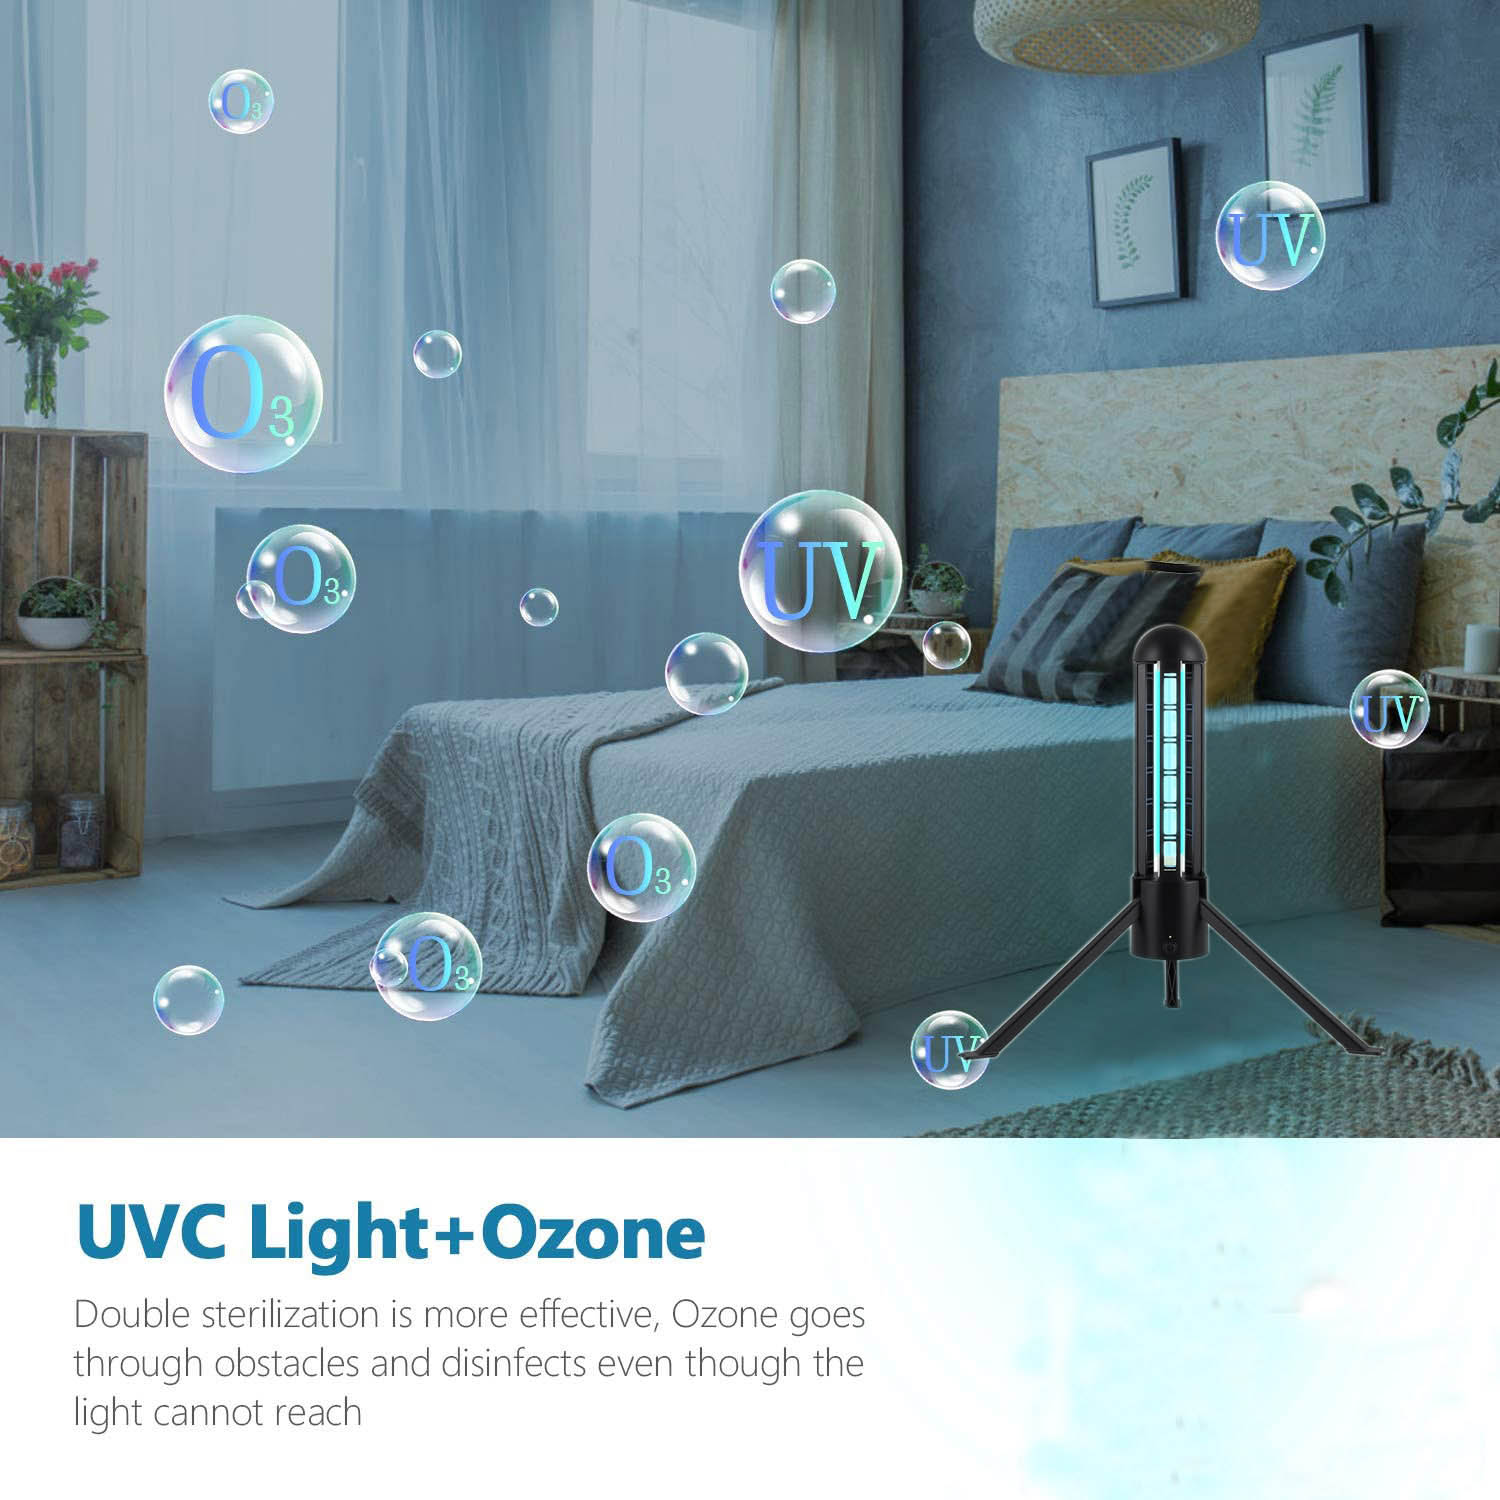 Lâmpada germicida de desinfecção UVC com ozônio - 2